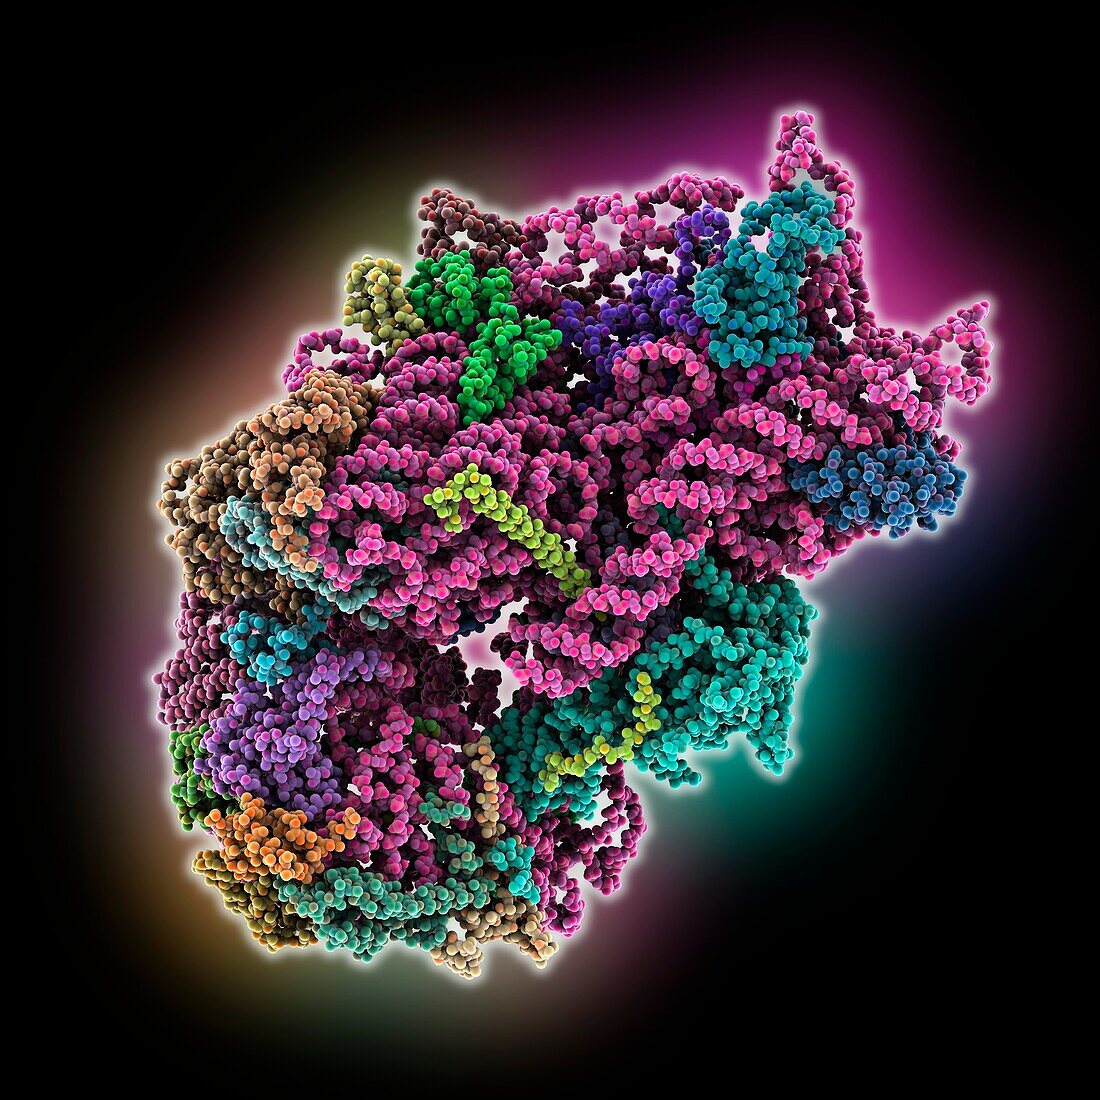 Human 40S ribosomal subunit, illustration